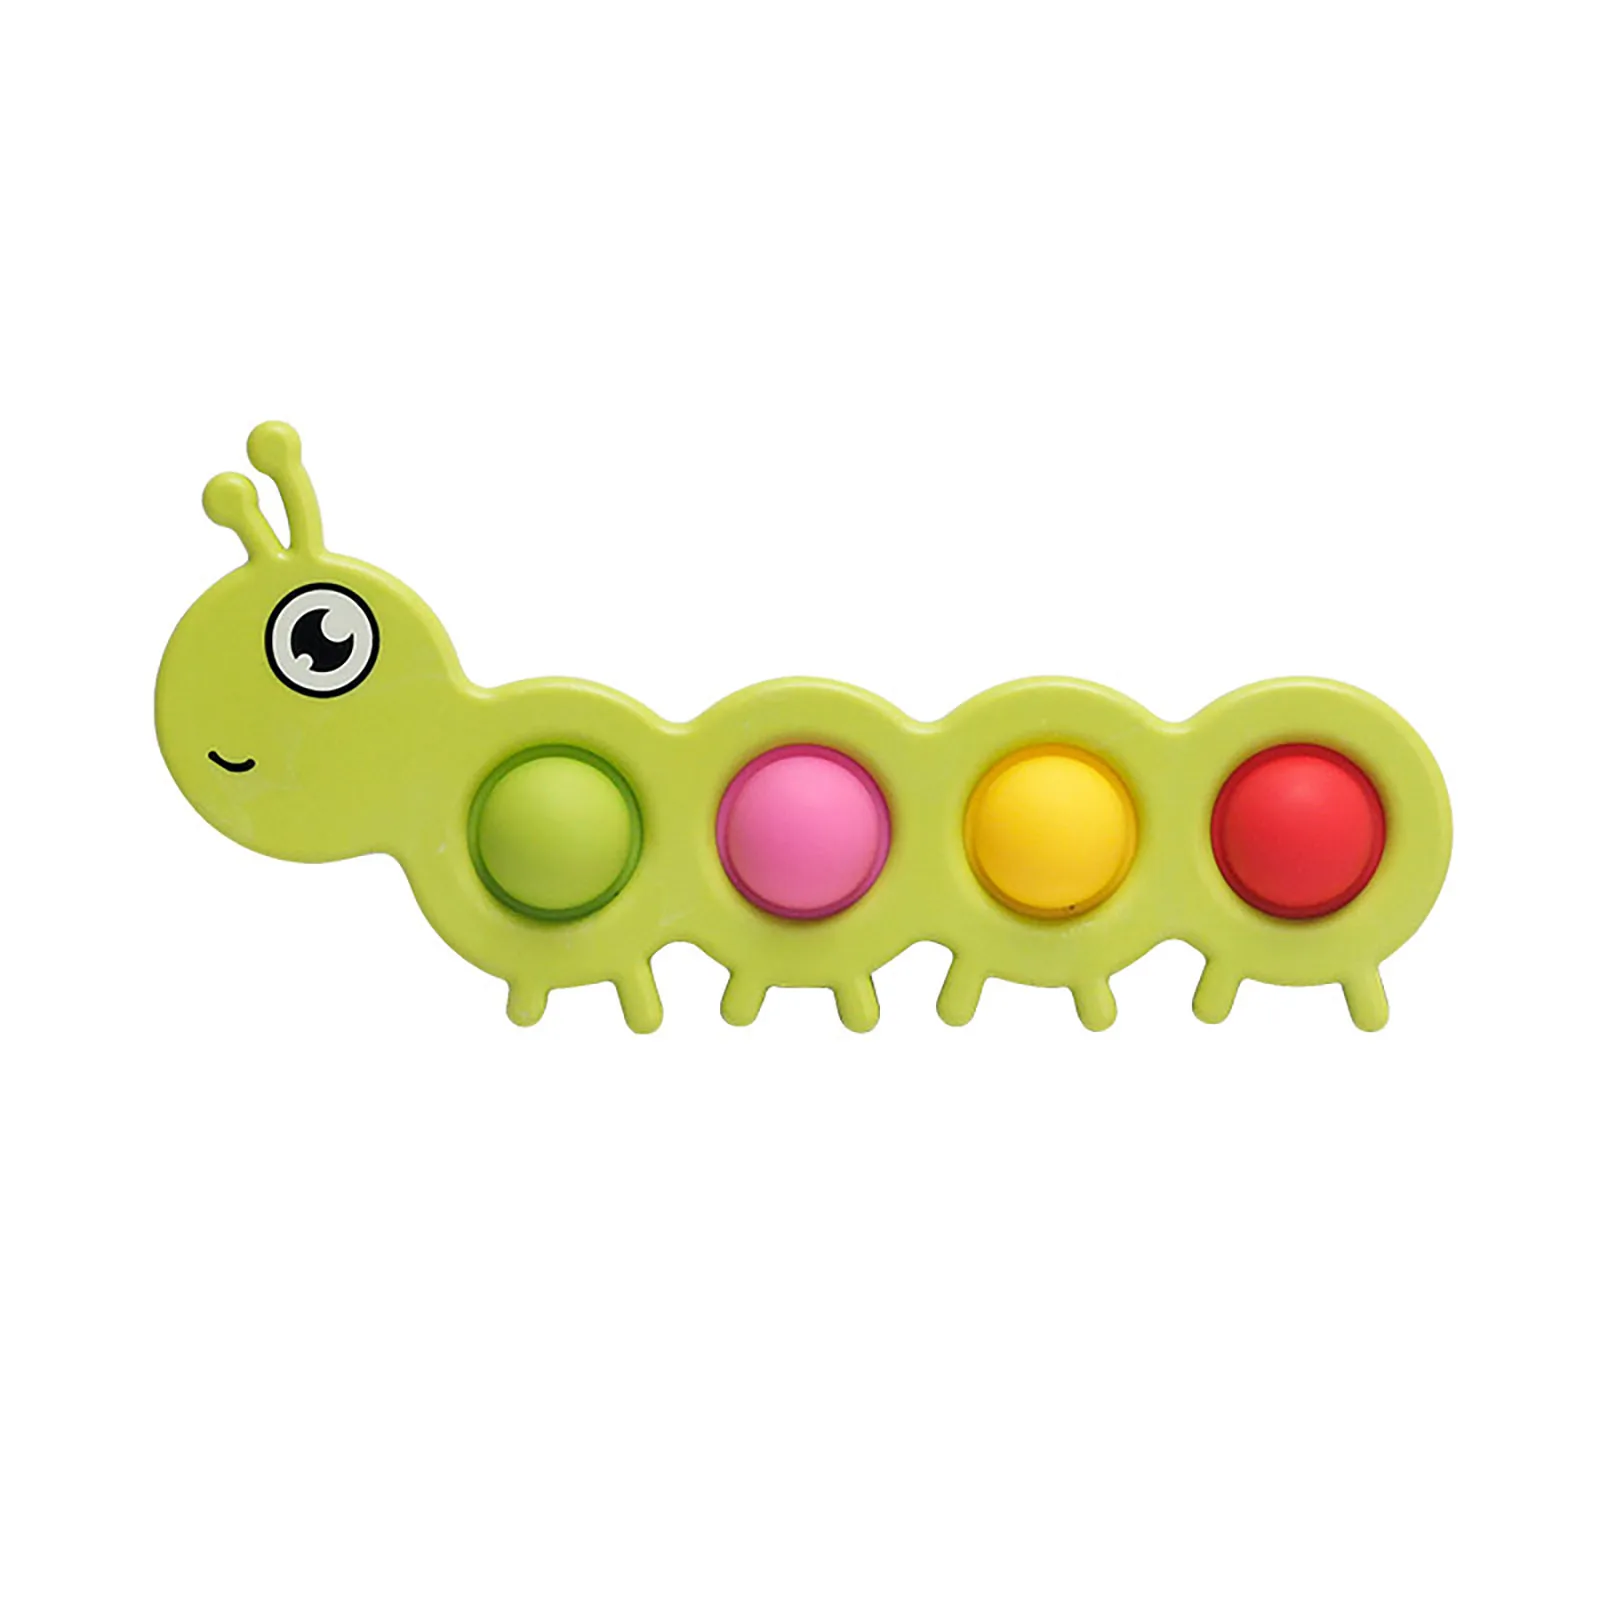 

Детская сенсорная игрушка-антистресс с простыми ячейками, подарок для детей и взрослых, интерактивные игрушки для декомпрессии пальцев